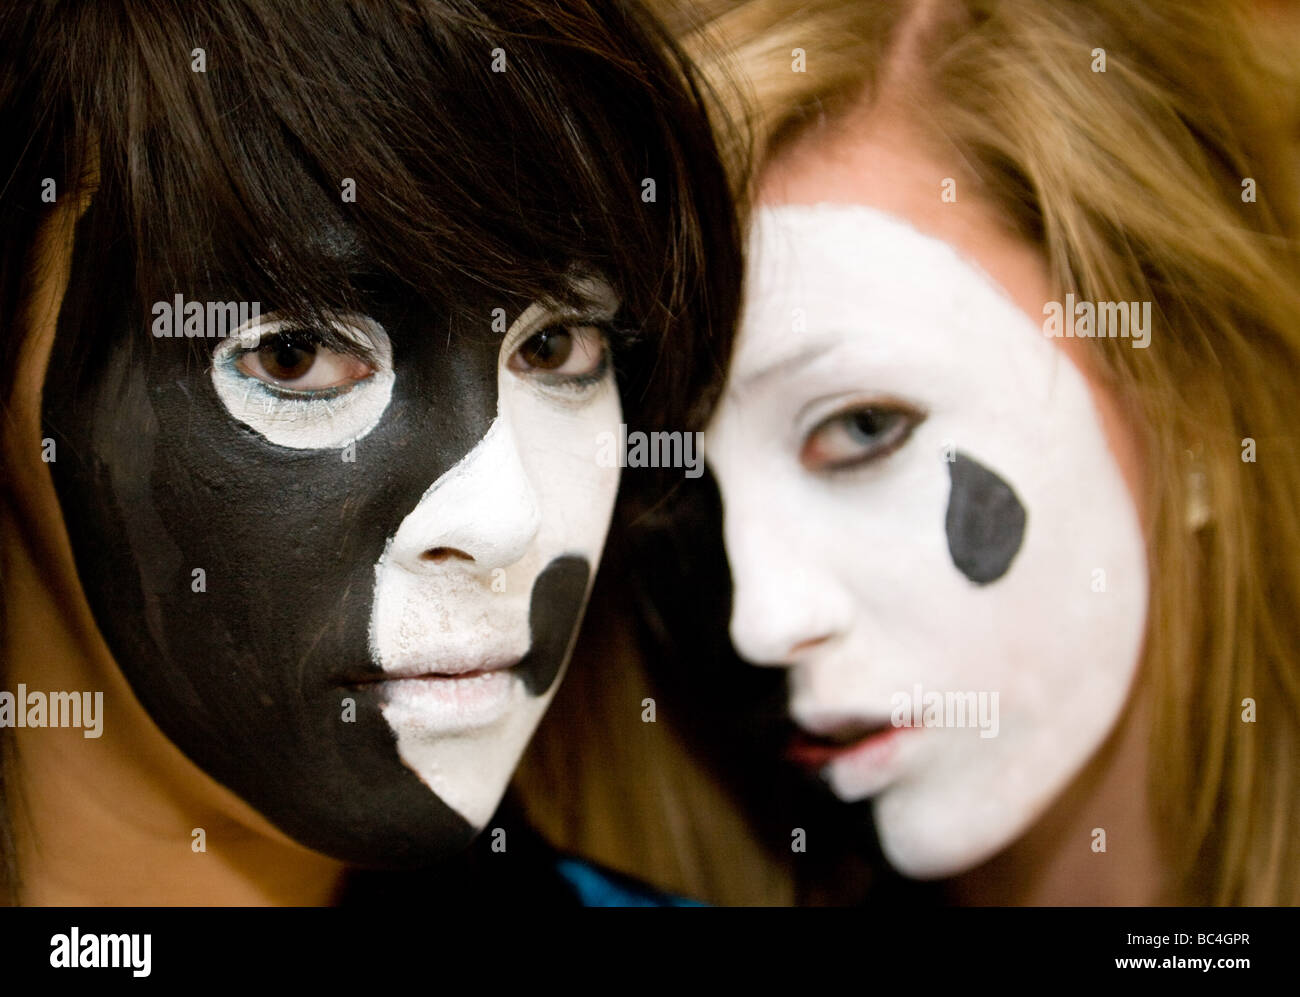 Due ragazze adolescenti avendo avuto le loro facce dipinte nel drammatico i colori nero e bianco Foto Stock